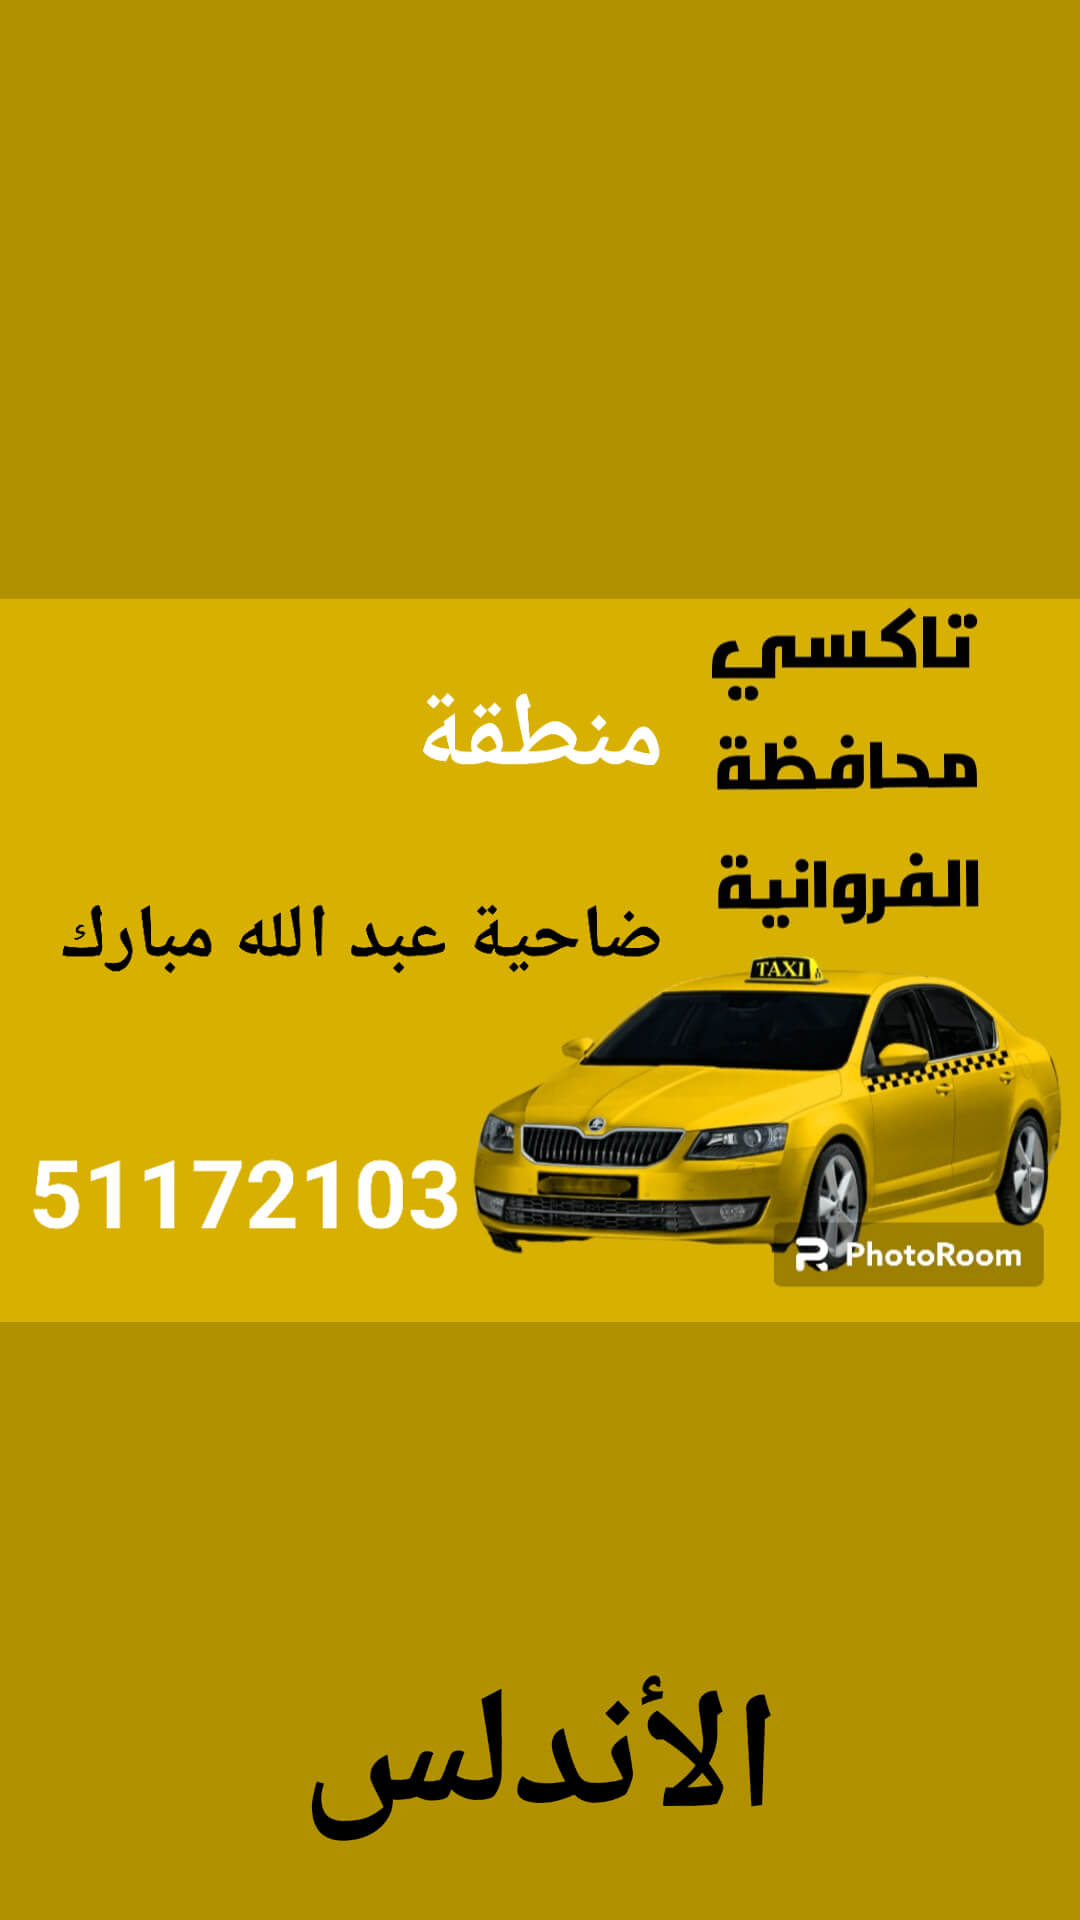 تاكسي عبدالله مبارك